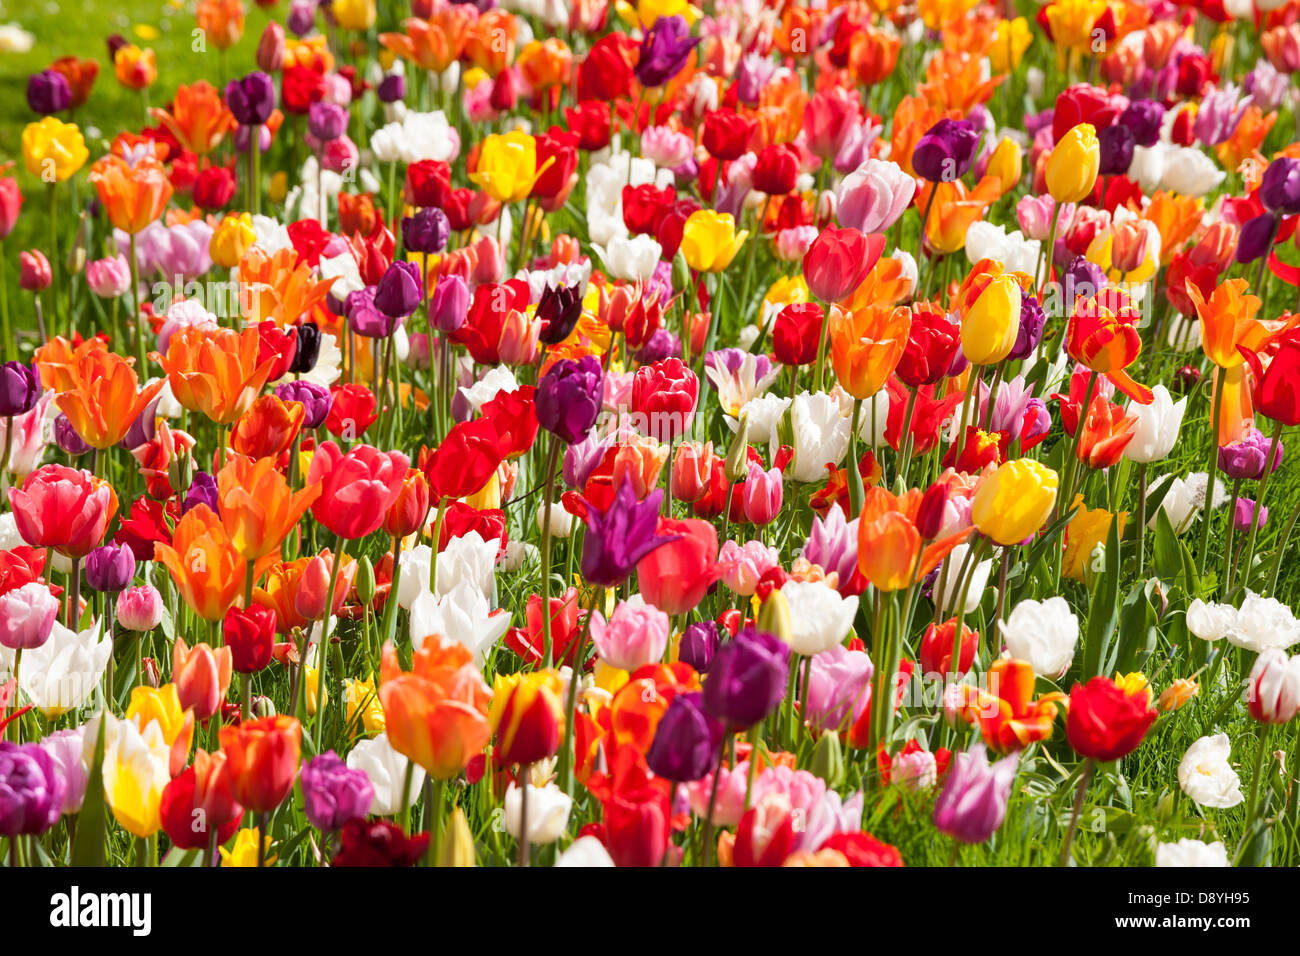 Los tulipanes. Mezcla de muchos diferentes colores multicolor tulipanes holandeses en un jardín cerca de la frontera de Amsterdam Holanda Holanda Foto de stock